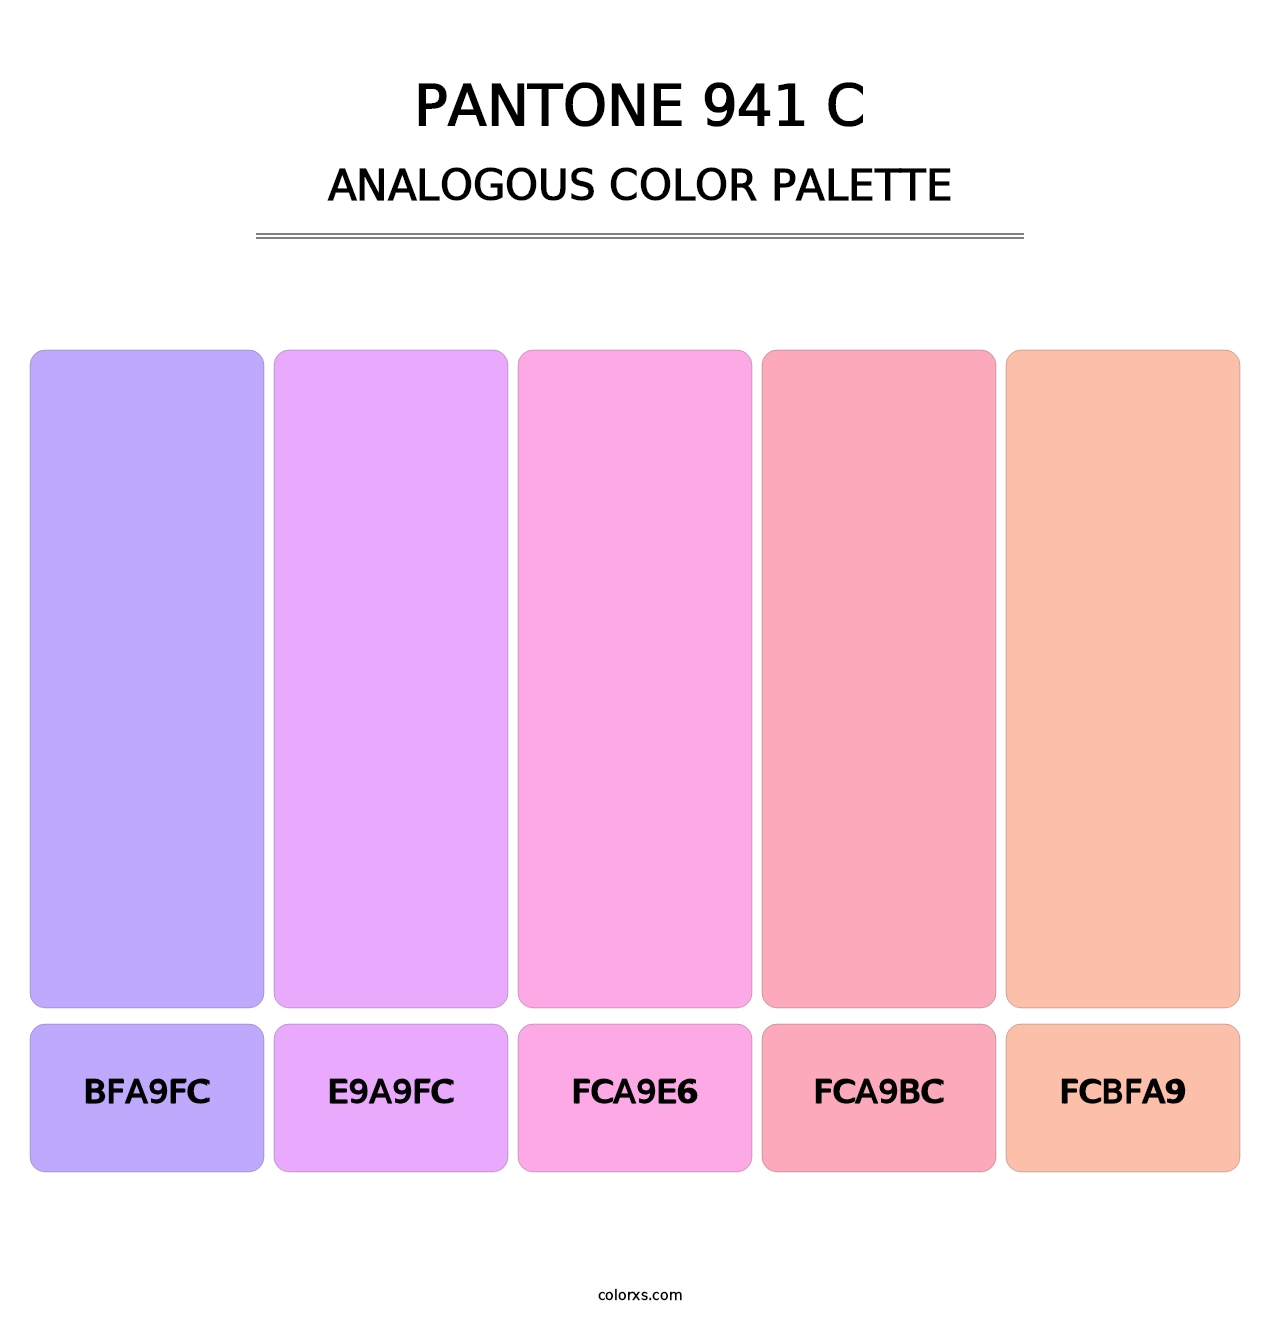 PANTONE 941 C - Analogous Color Palette